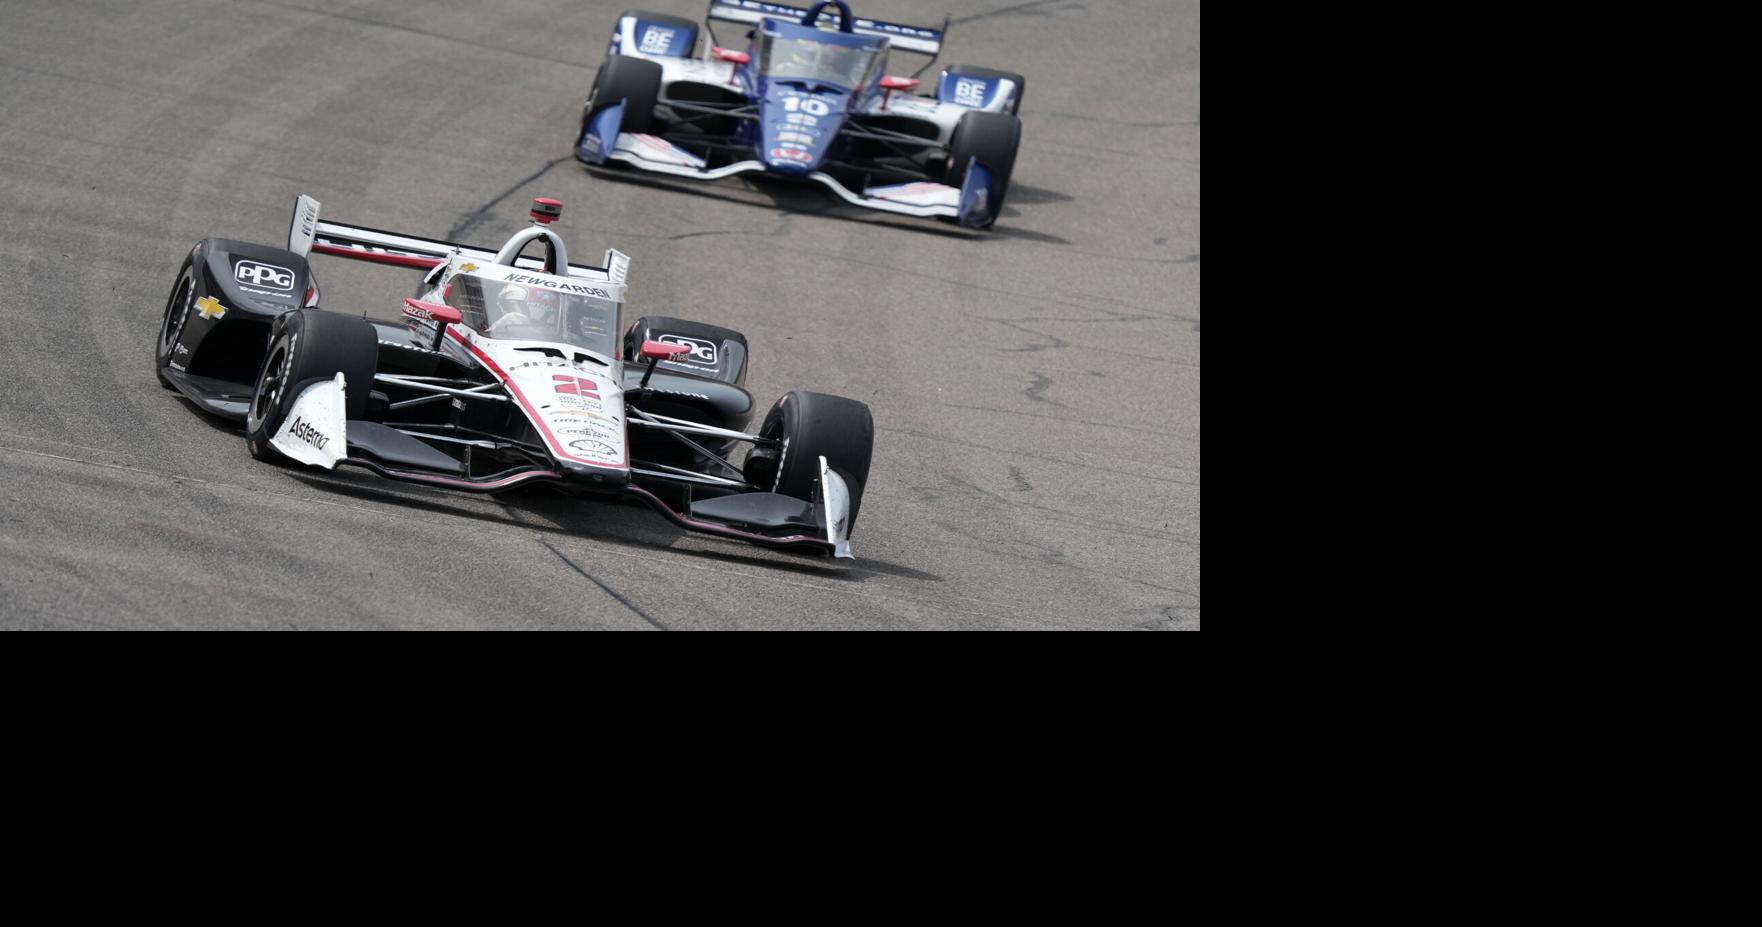 Penske-backed Force Indy advances to Indy Lights – Motorsport Week